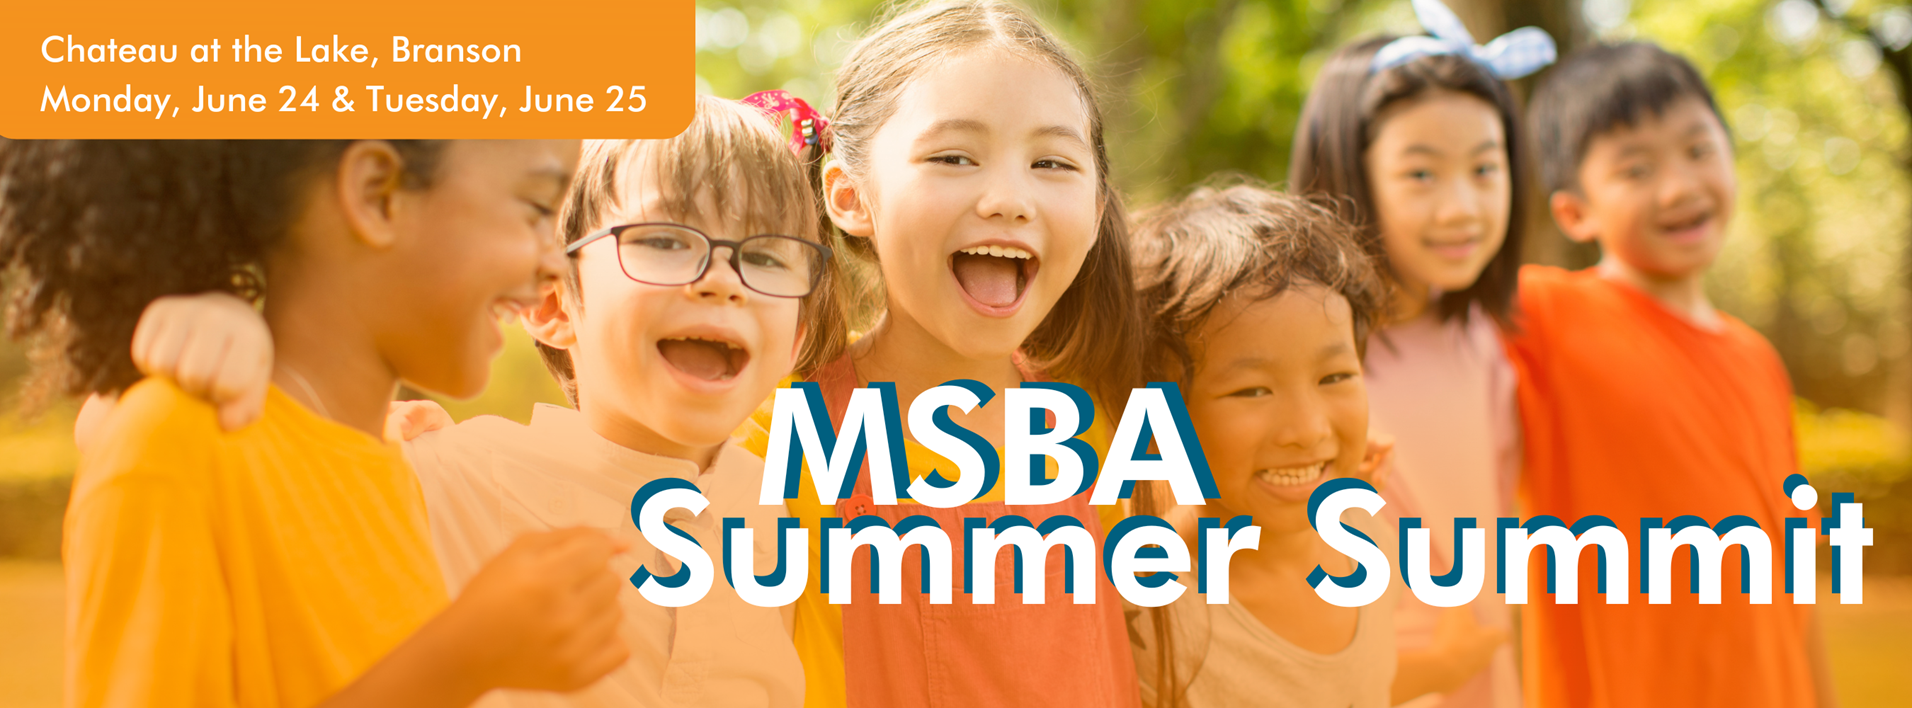 MSBA Summer Summit